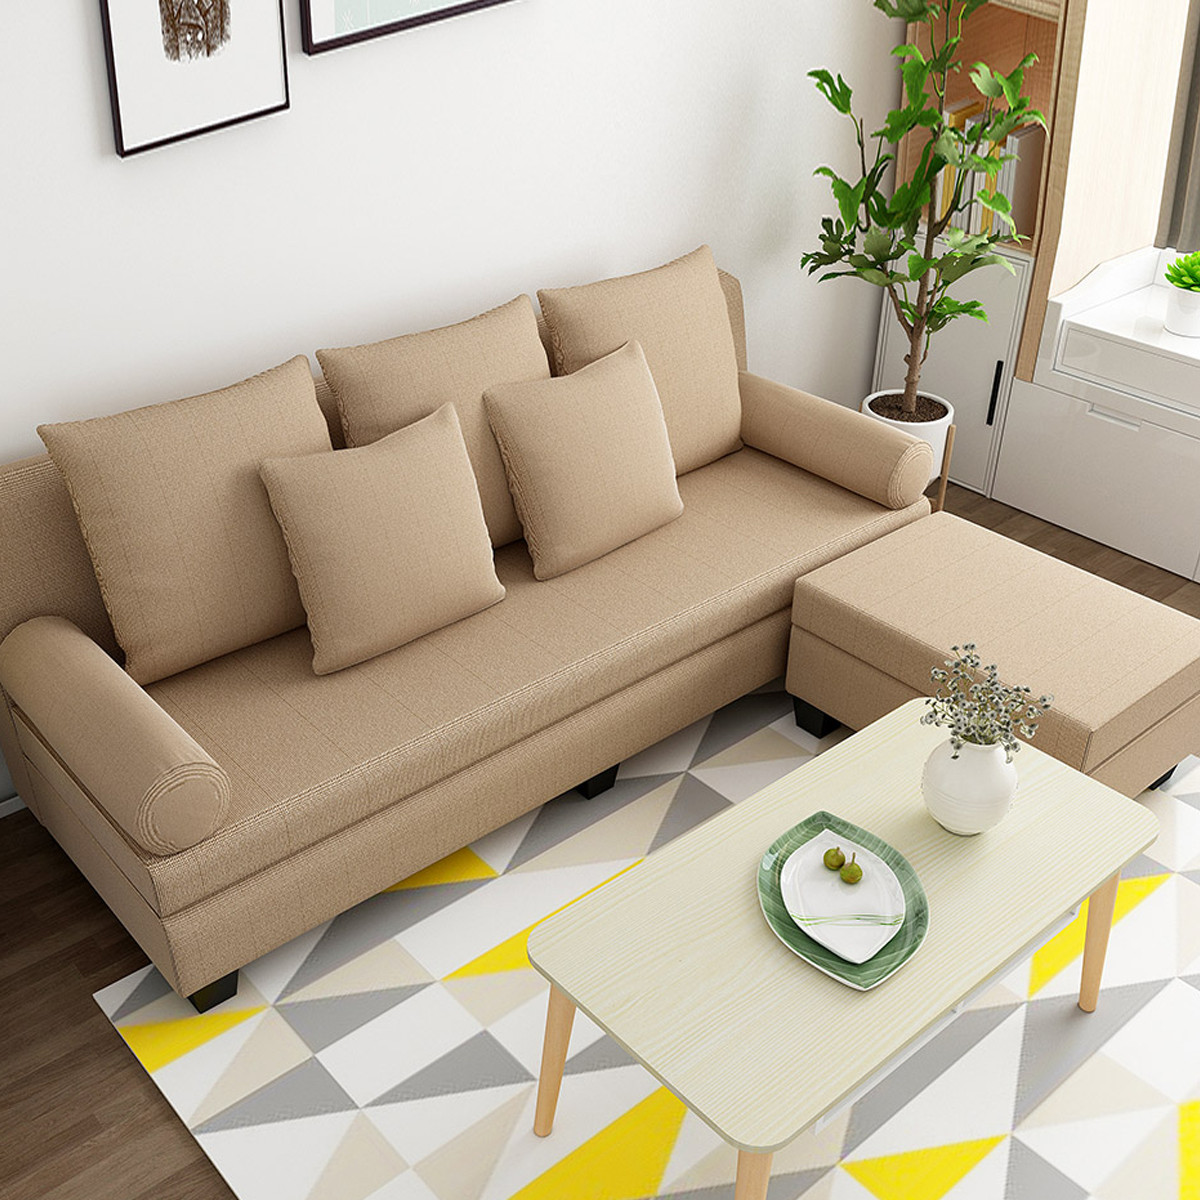 布艺沙发小户型单身公寓多位沙发简约现代转角沙发组合